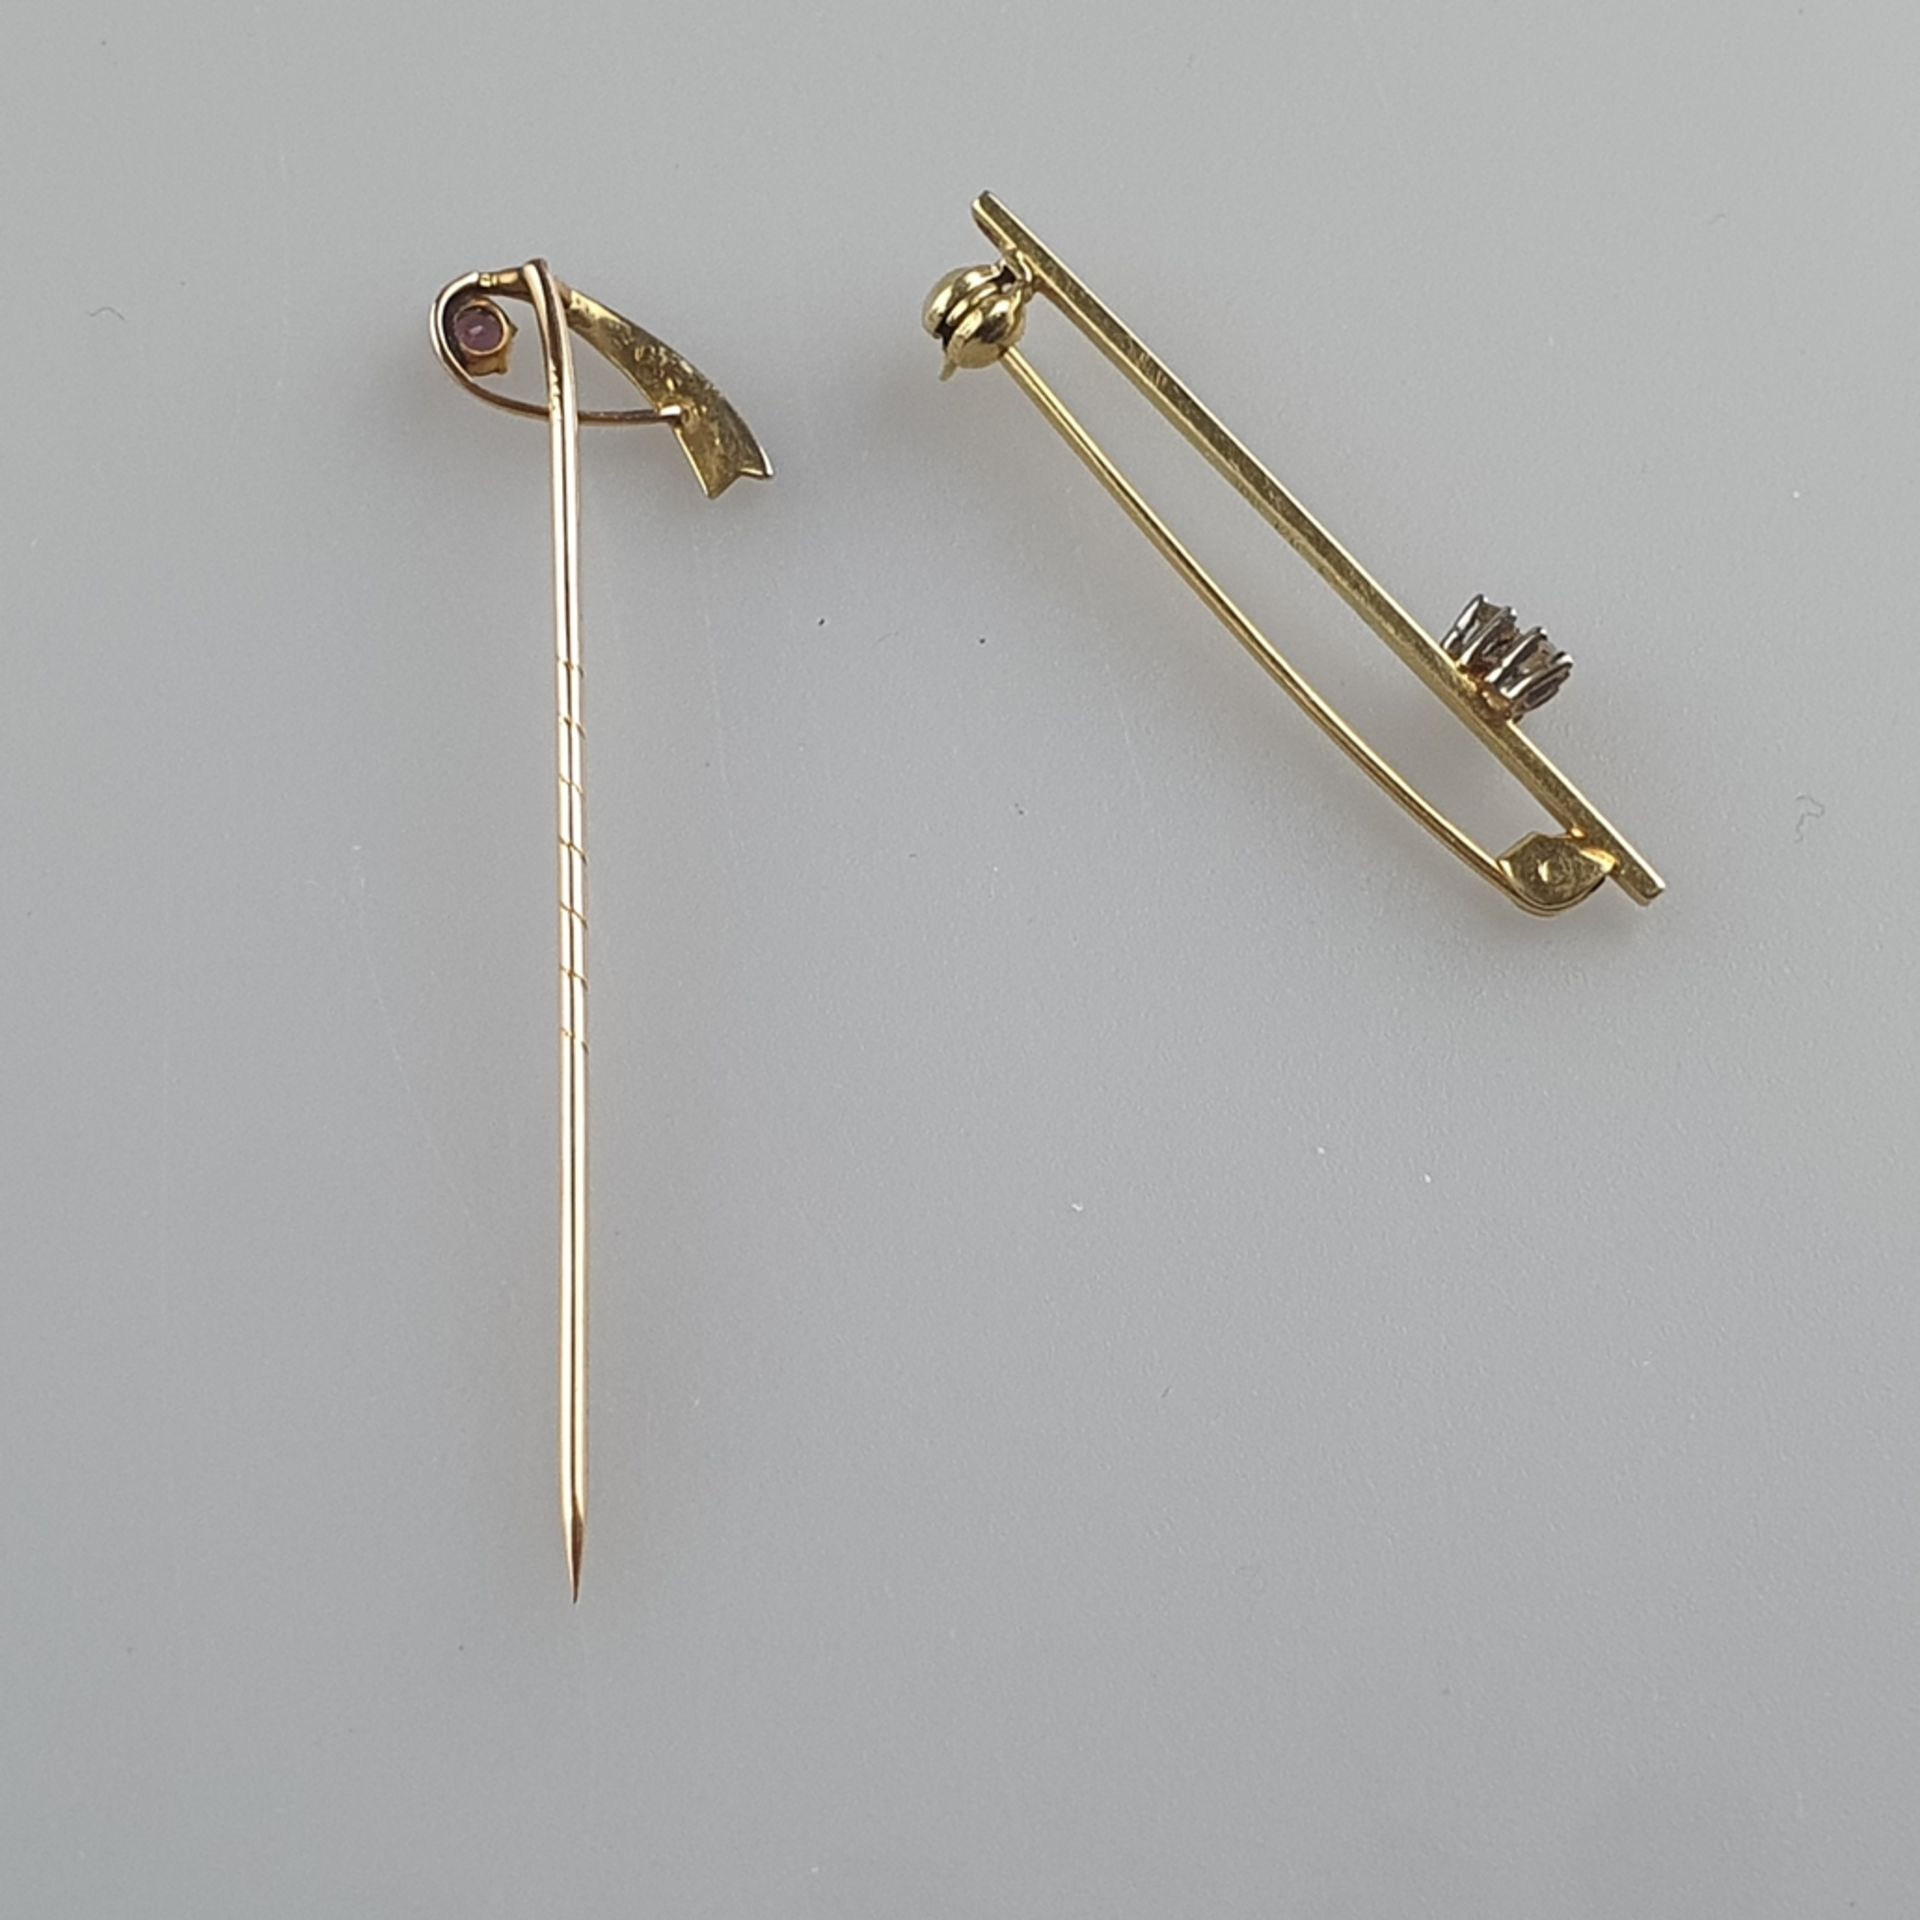 Goldnadel & -Nadelbrosche - Nadel aus Gelbgold mit rundfacettiertem Amethyst und 3 Saatperlen (ursp - Image 3 of 3